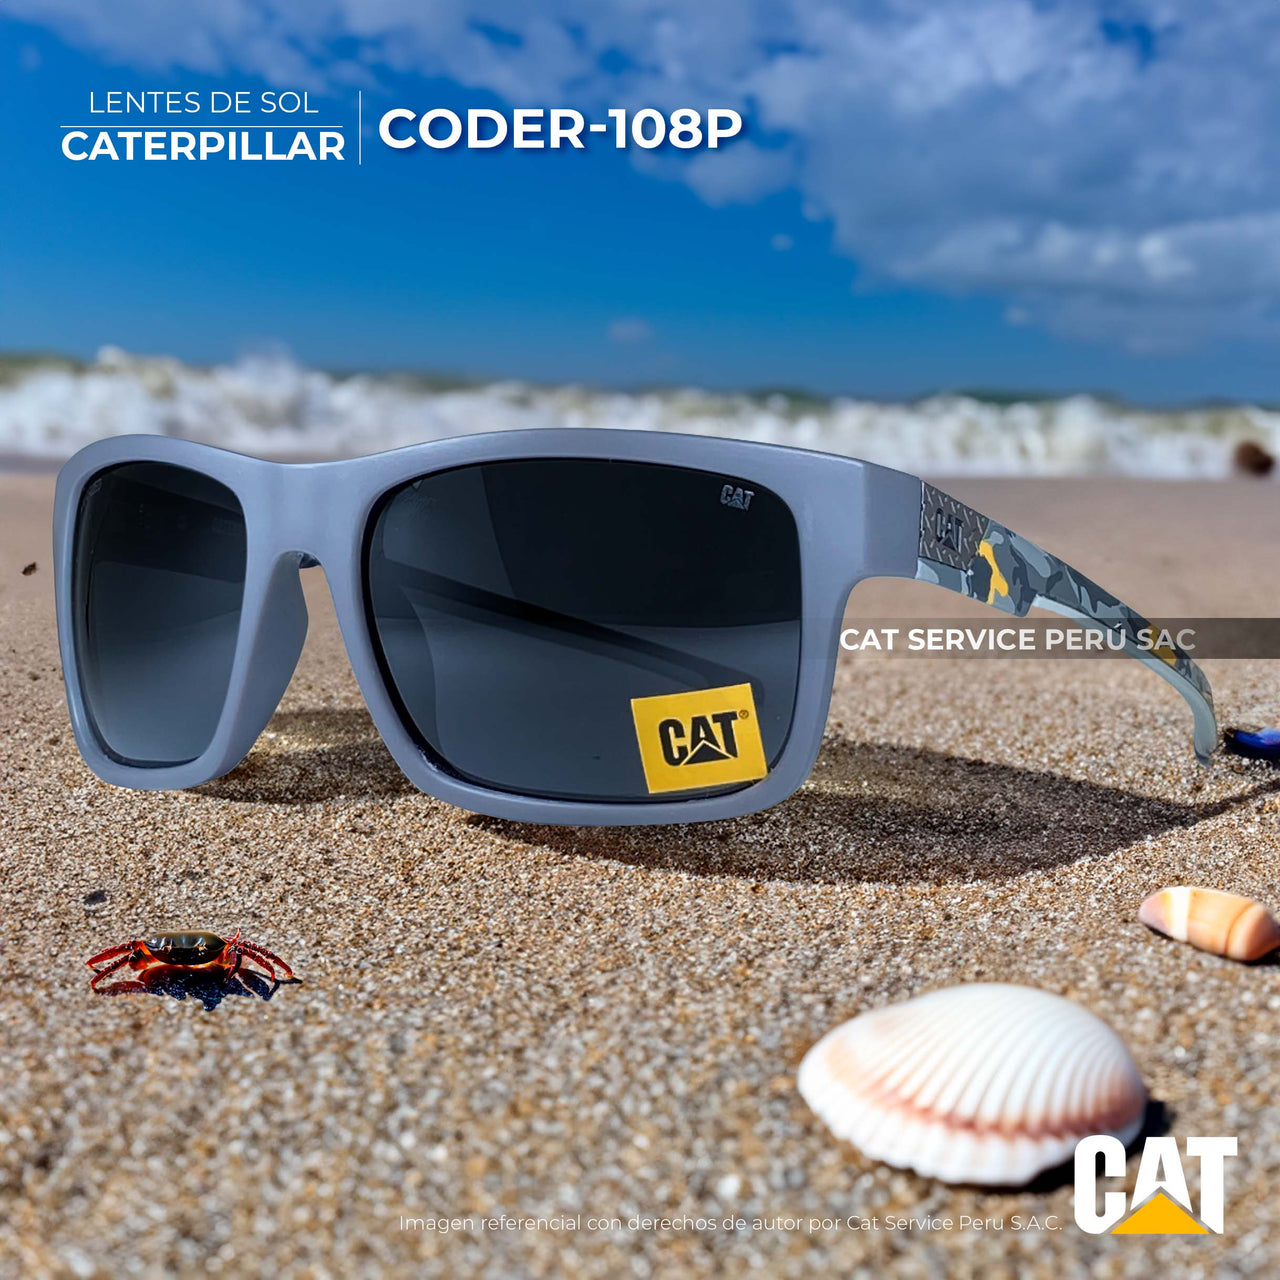 कैट सीटीएस-कोडर-108पी मून्स ब्लैक पोलराइज्ड धूप का चश्मा 